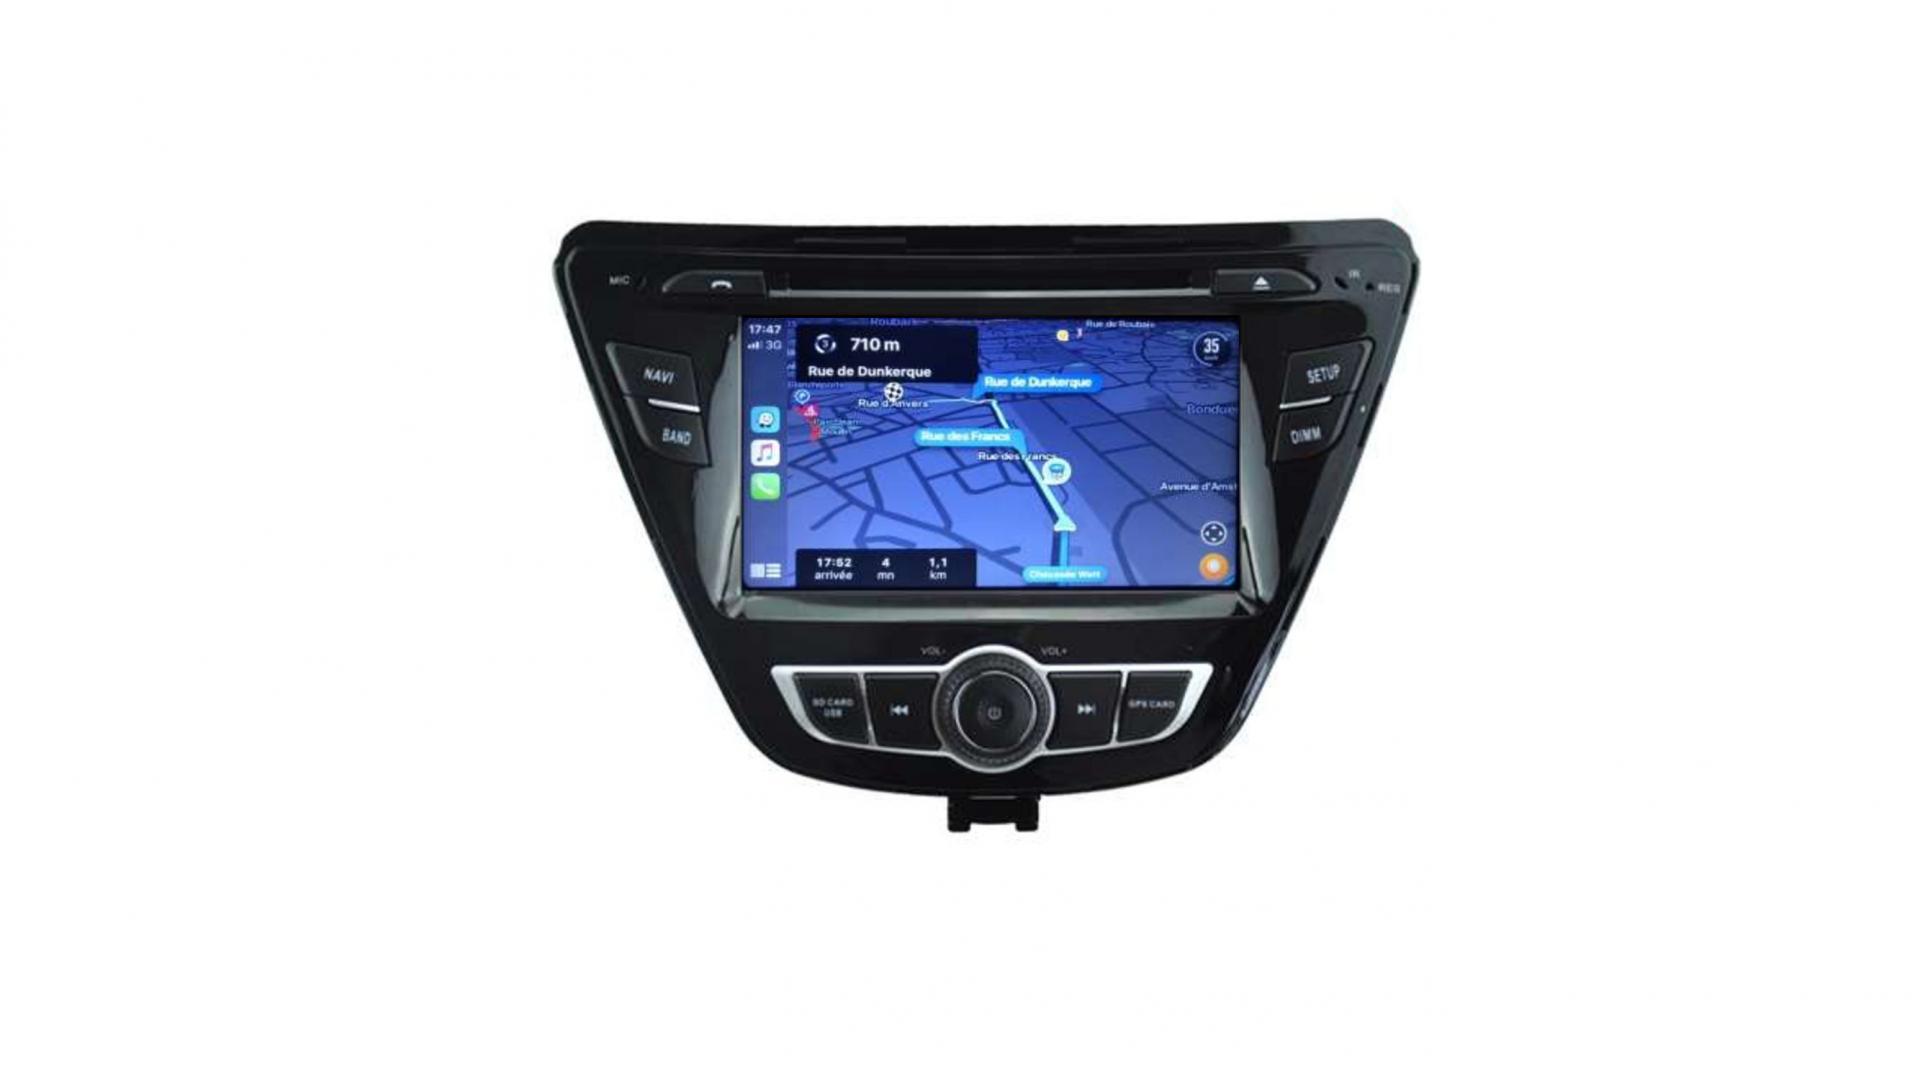 Autoradio androi d auto carplay gps bluetooth hyundai elantra avante 2014 2015 3